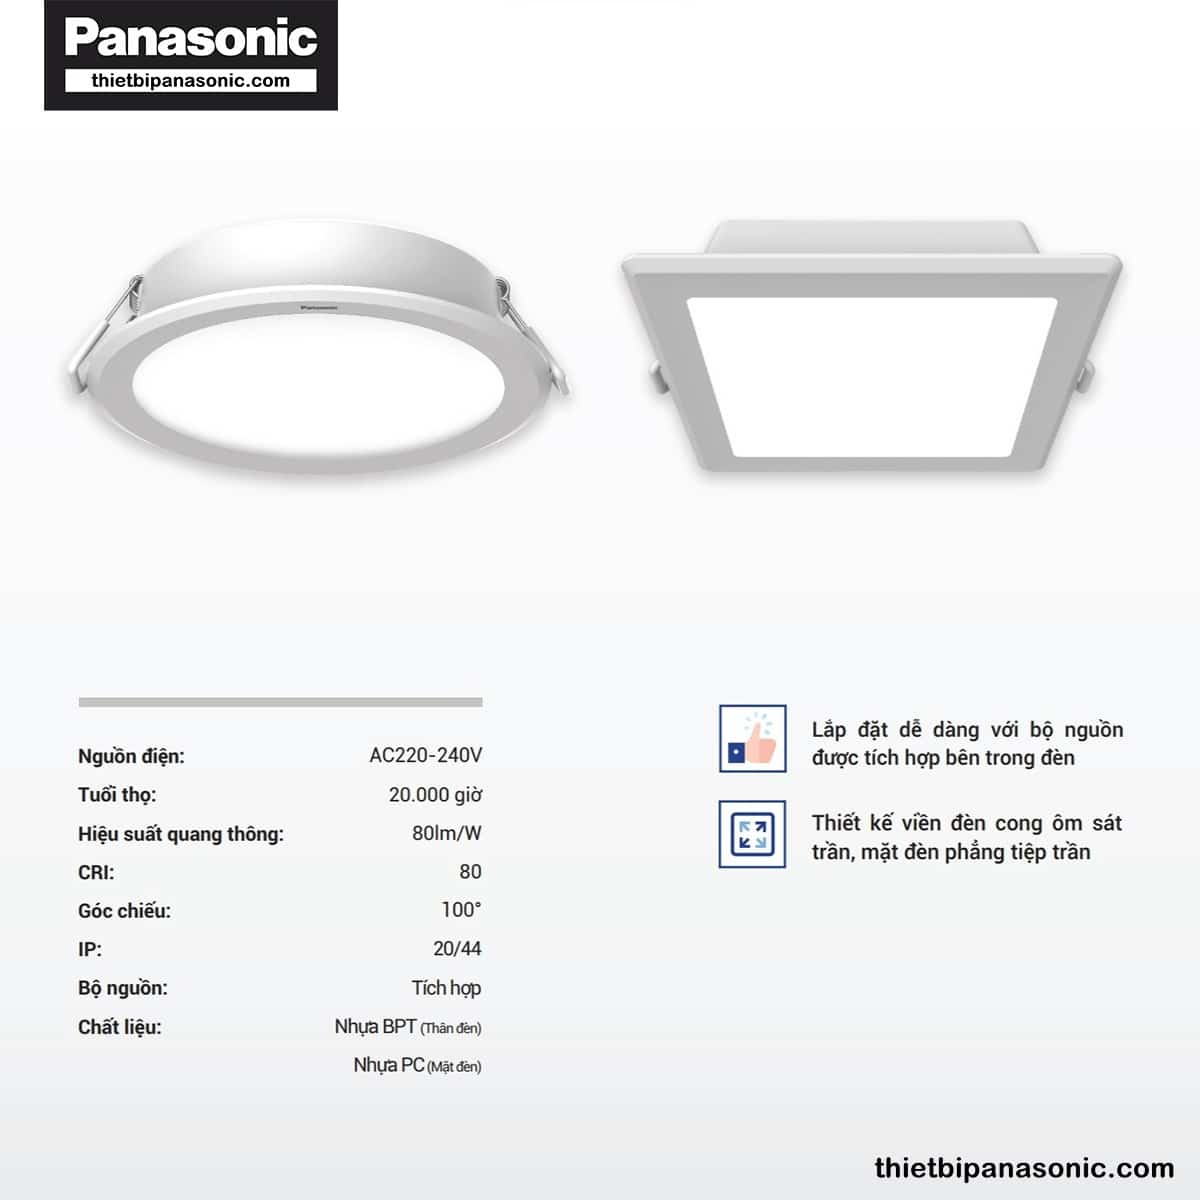 Đặc điểm nổi bật của Đèn âm trần DN 2G Panasonic 24W đơn sắc tròn | lỗ khoét Ø175mm